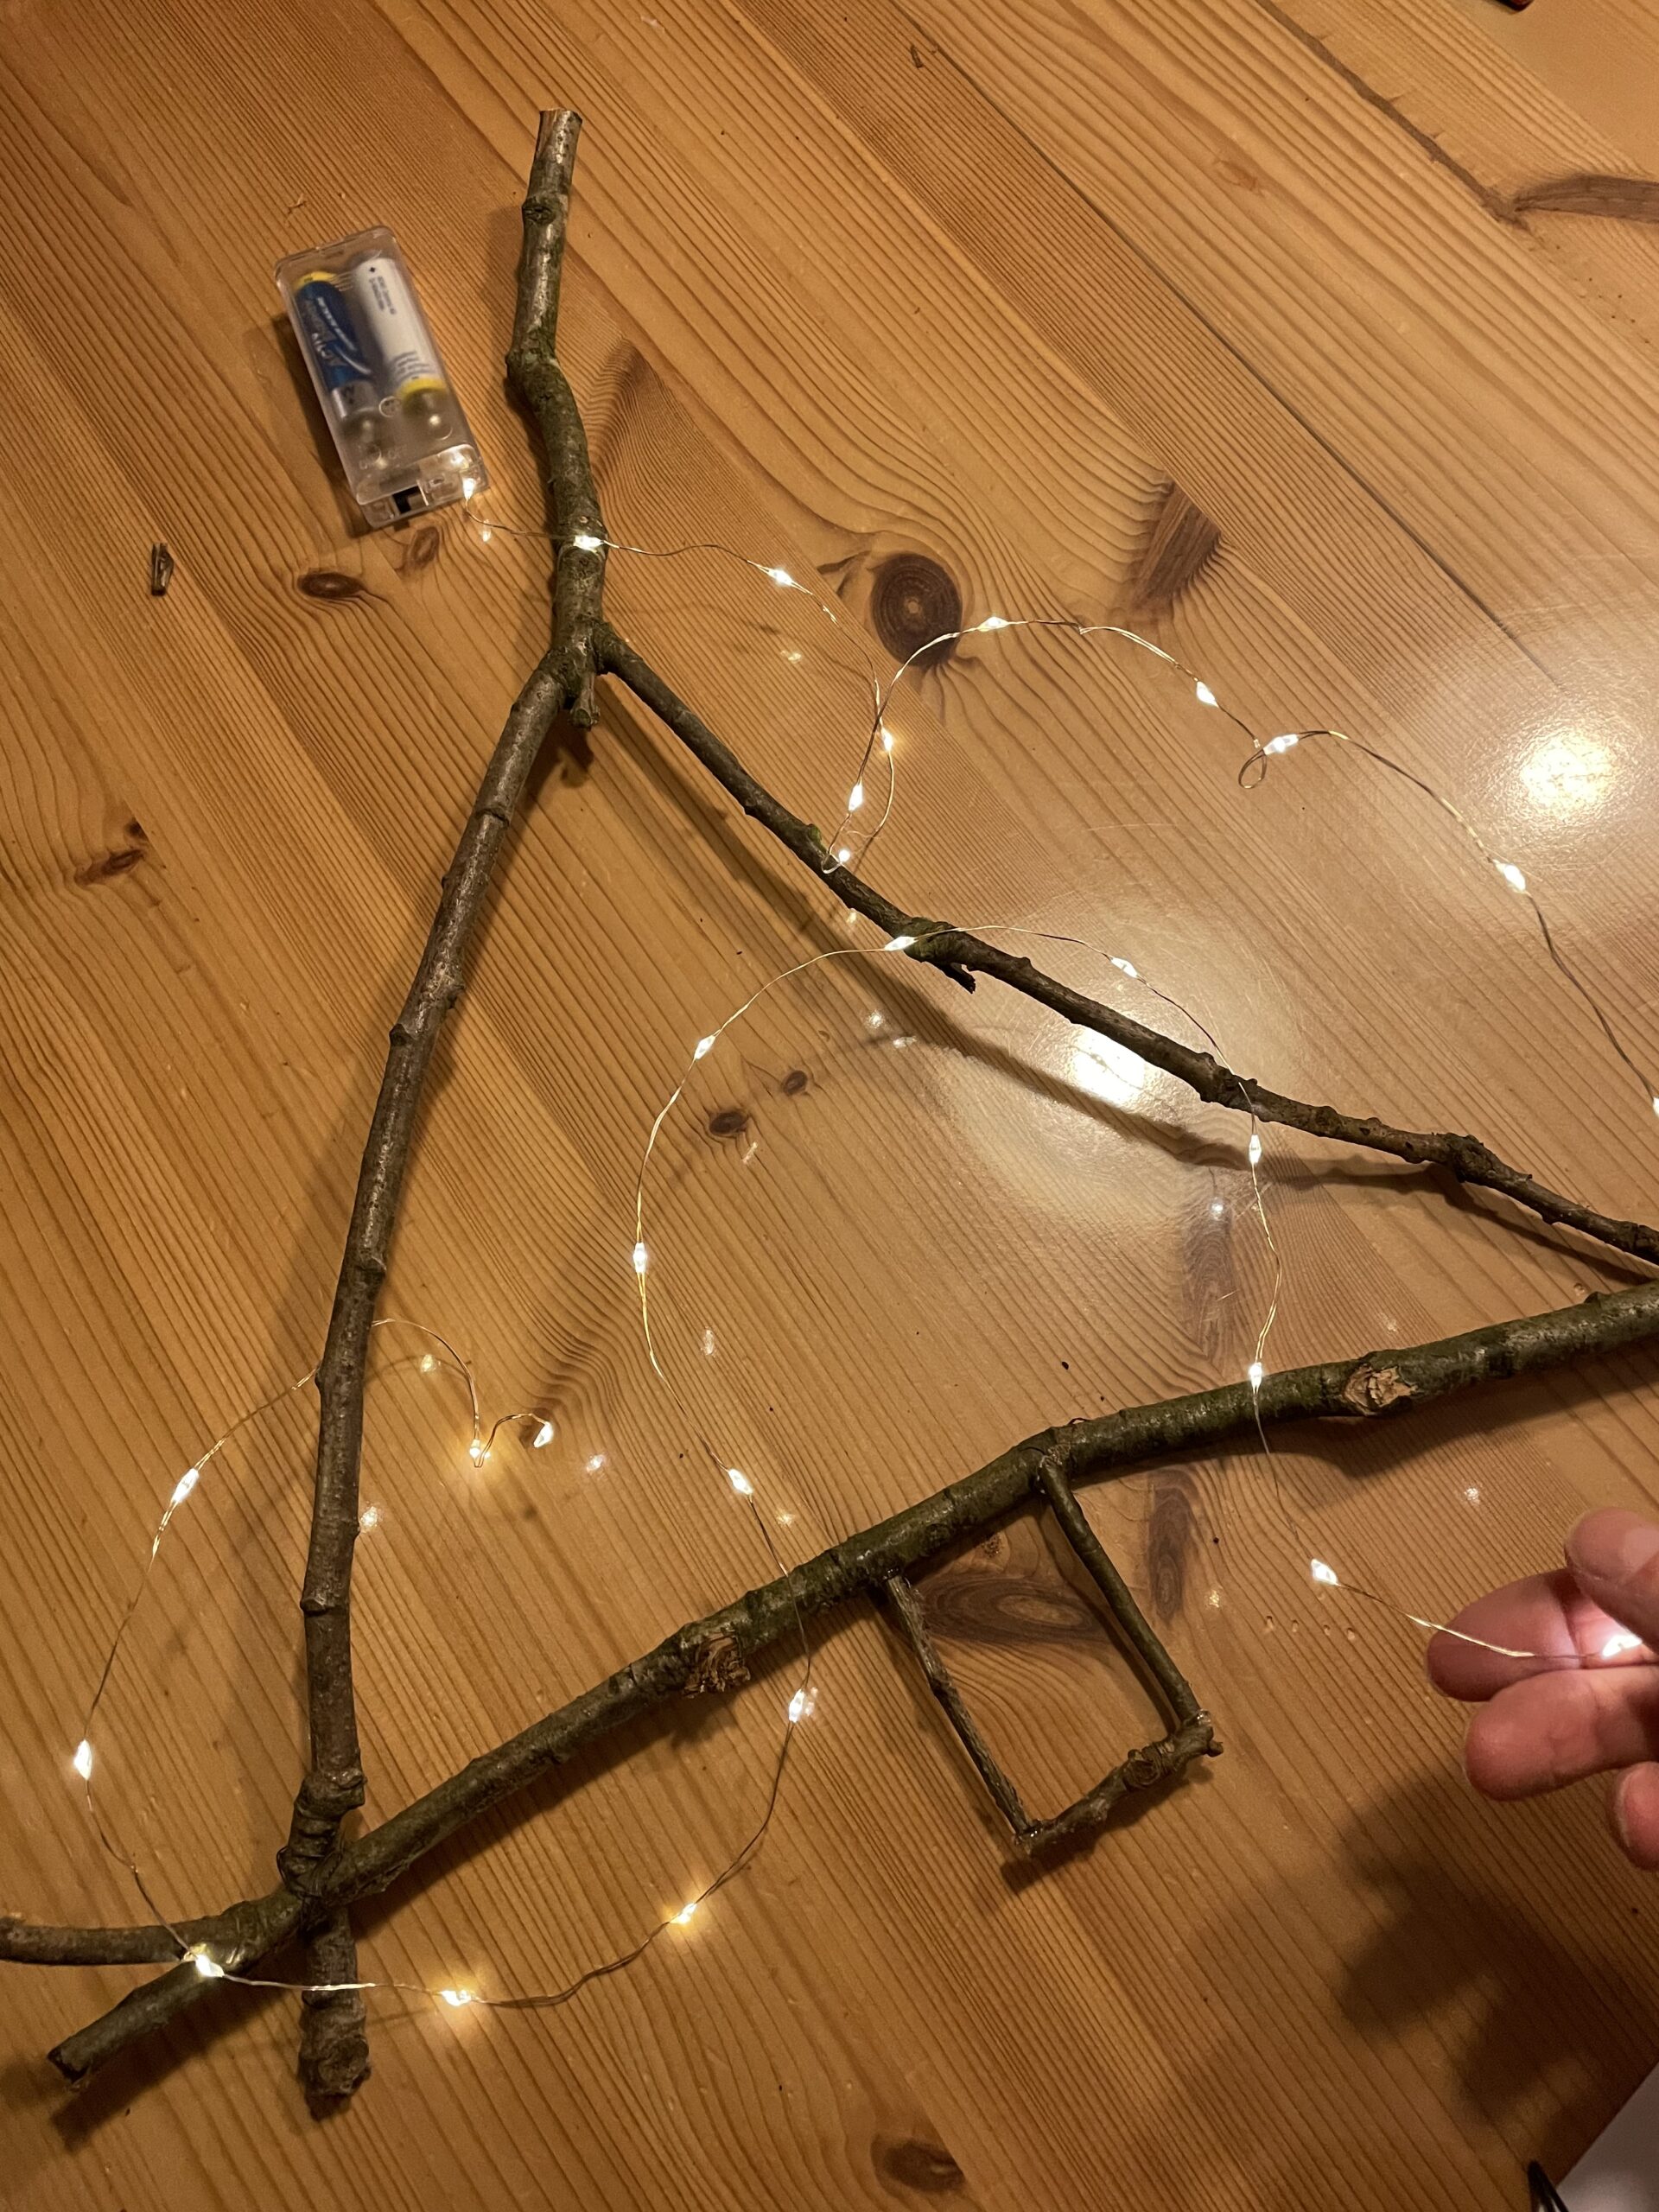 Bild zum Schritt 9 für das Bastel- und DIY-Abenteuer für Kinder: 'Jetzt wickelt ihr eine dünne Lichterketten um den Tannenbaum.'